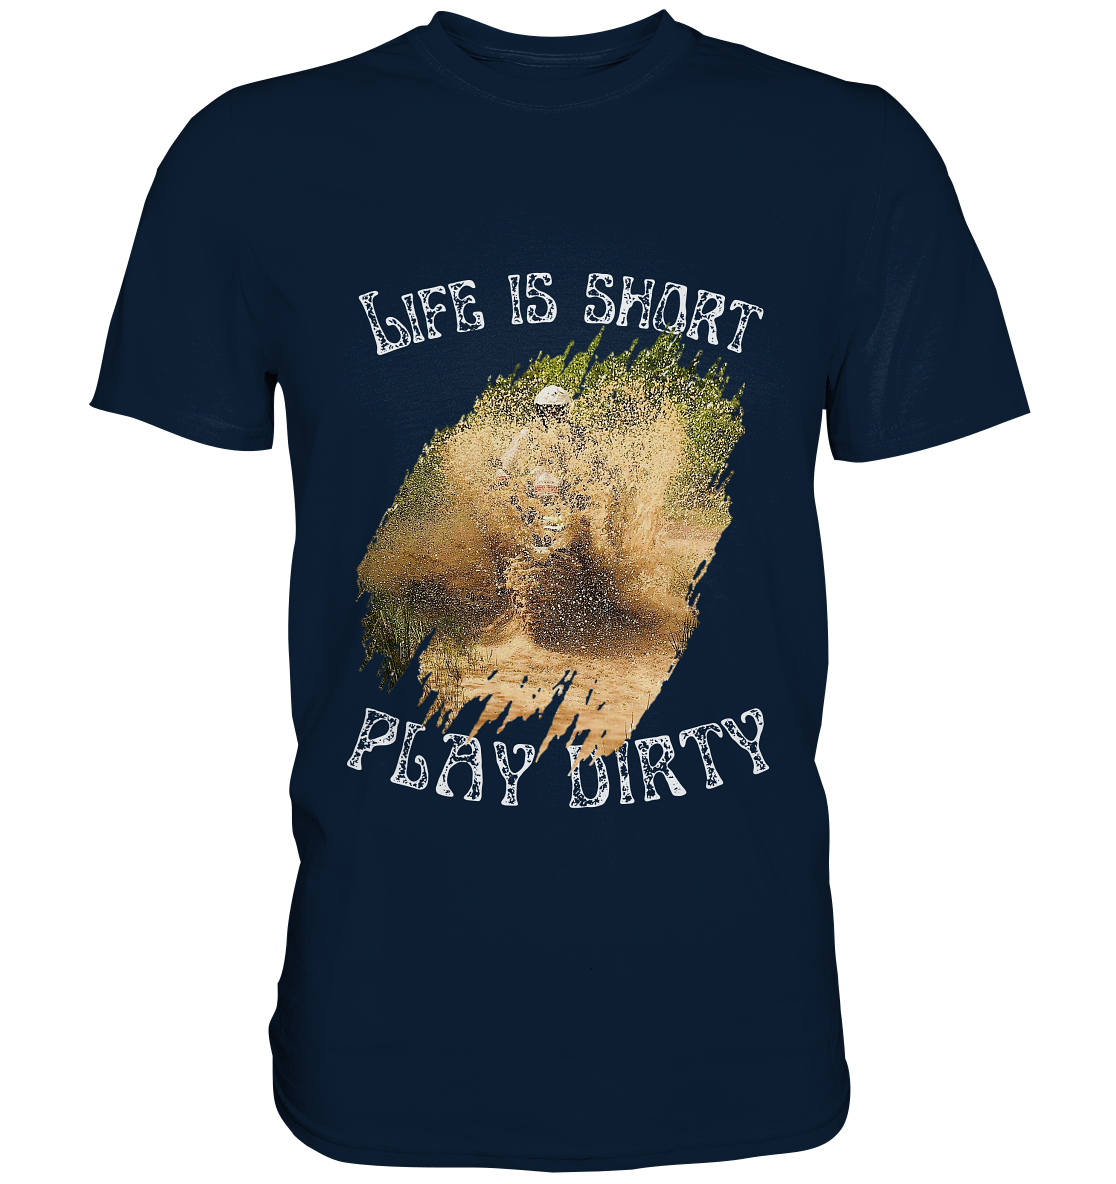 "Life is short - play dirty" _ für Jürgen P. | Shirt mit Motorrad-aufdruck in hellem Design